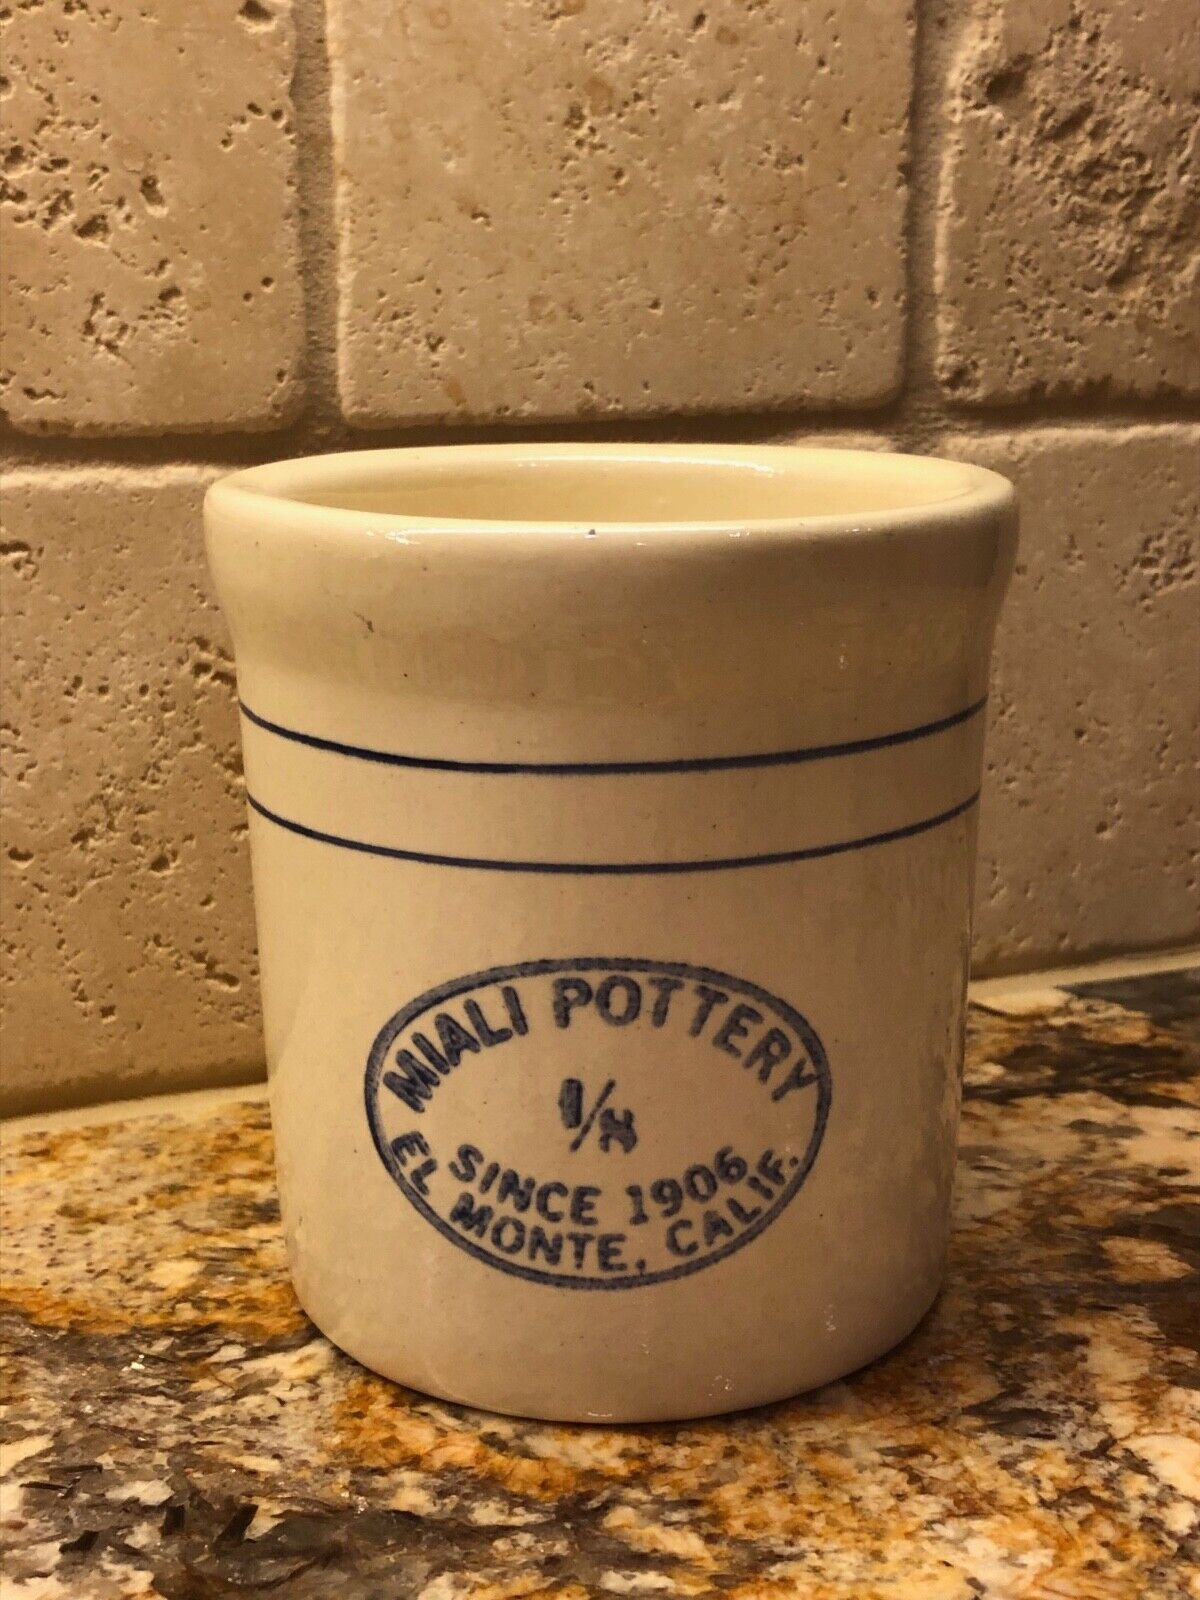 Vintage Miali Pottery 1/8 Crock El Monte Calif Since 1906